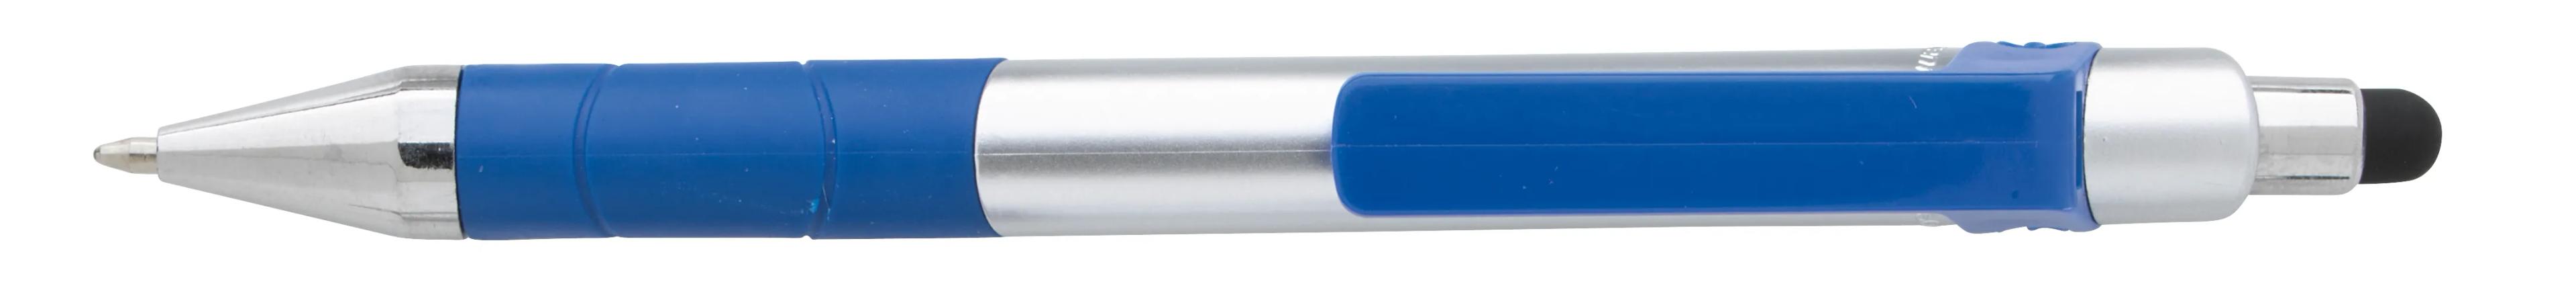 Souvenir® Rize Stylus Pen 10 of 28